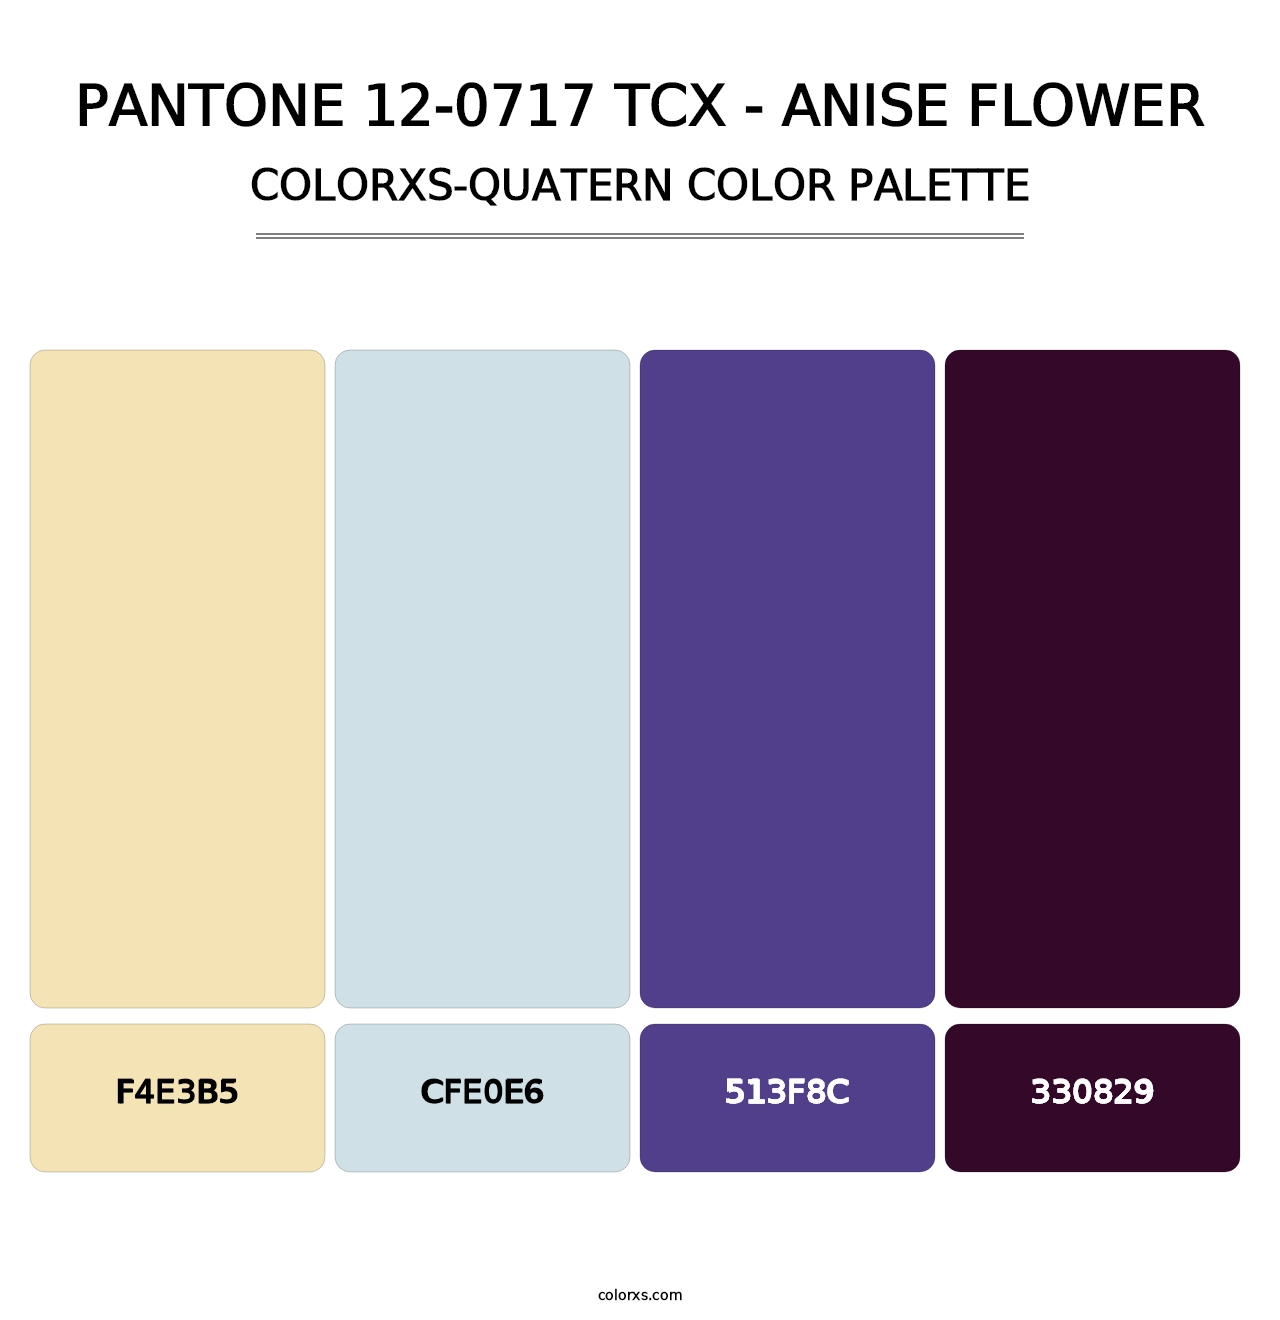 PANTONE 12-0717 TCX - Anise Flower - Colorxs Quatern Palette